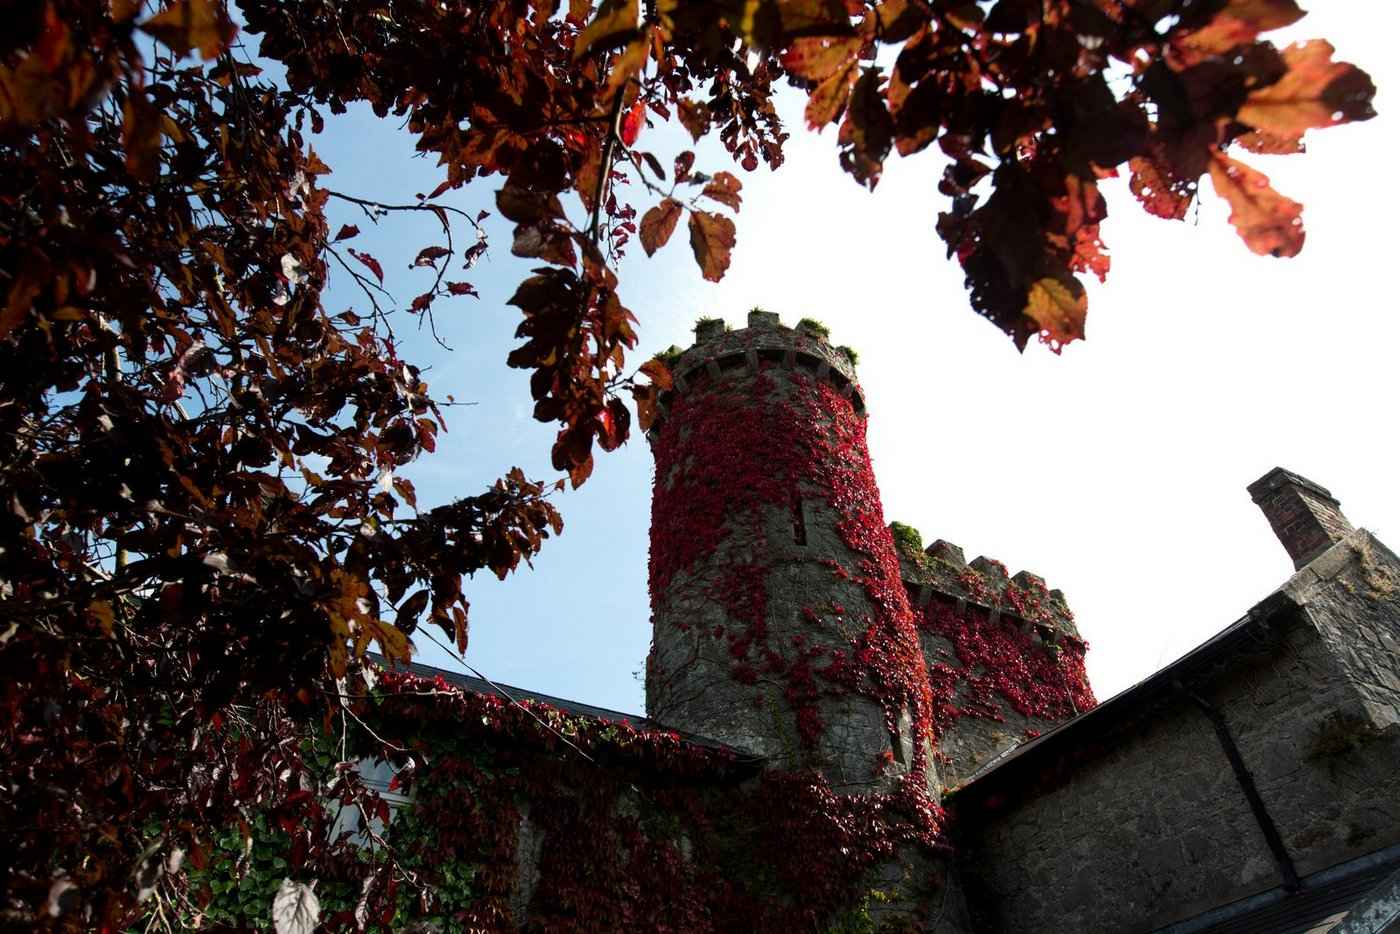 Fanningstown Castle Adare Co. Limerick